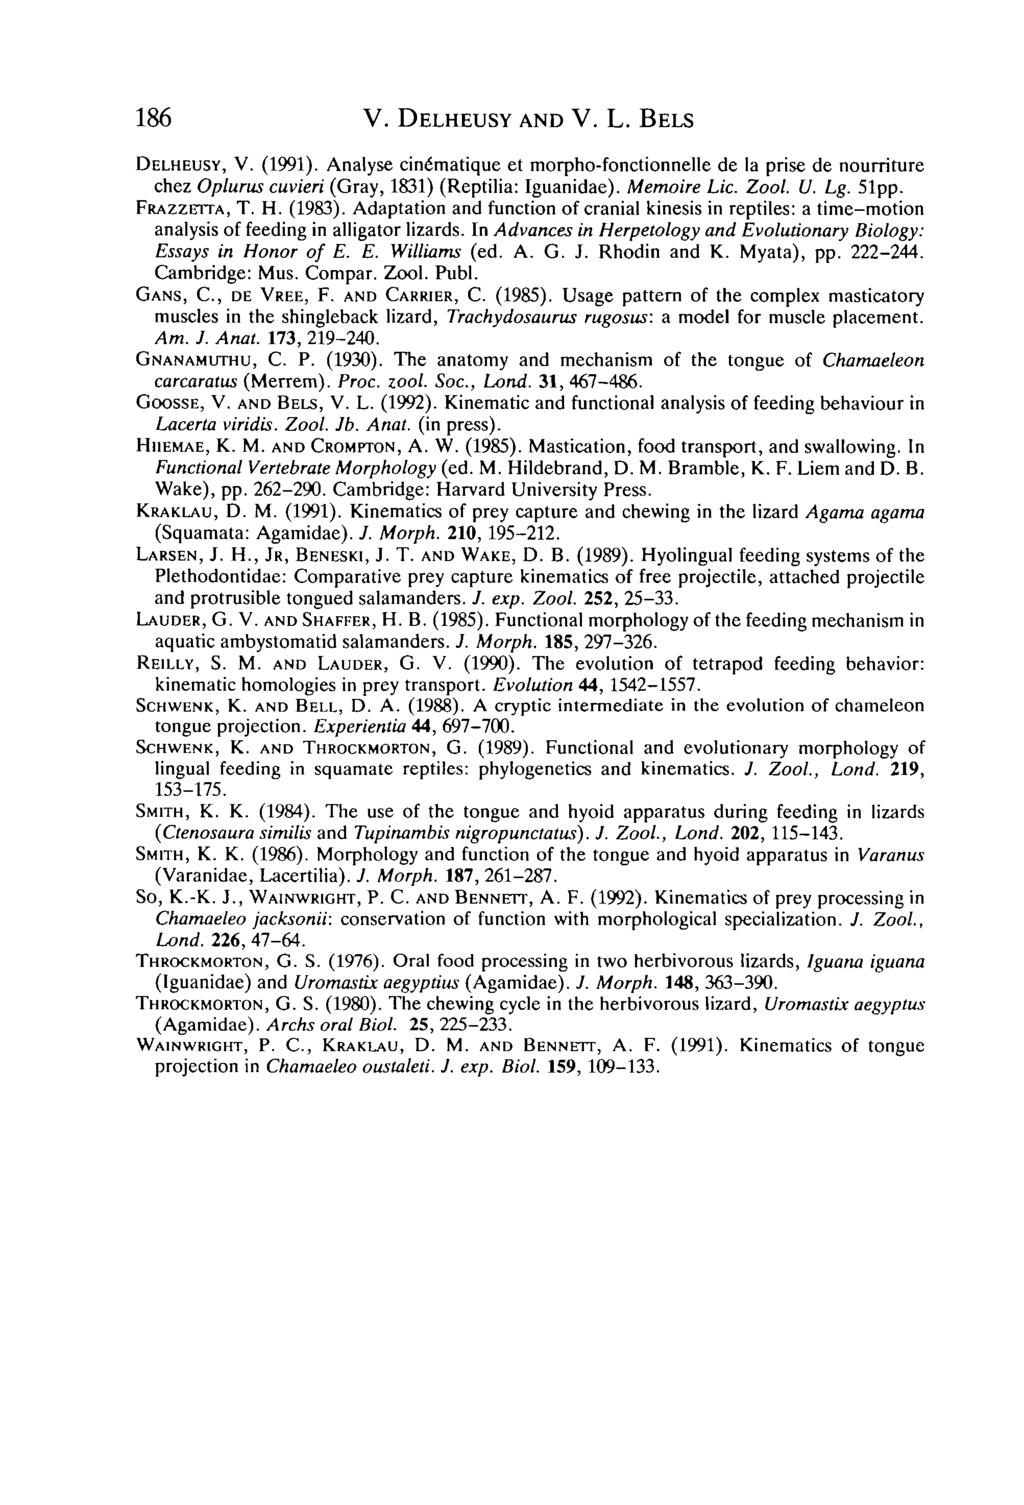 186 V. DELHEUSY AND V. L. BELS DELHEUSY, V. (1991). Analyse cine'matique et morpho-fonctionnelle de la prise de nouniture chez Opiums cuvieri (Gray, 1831) (Reptilia: Iguanidae). Memoire Lie. Zool. U.